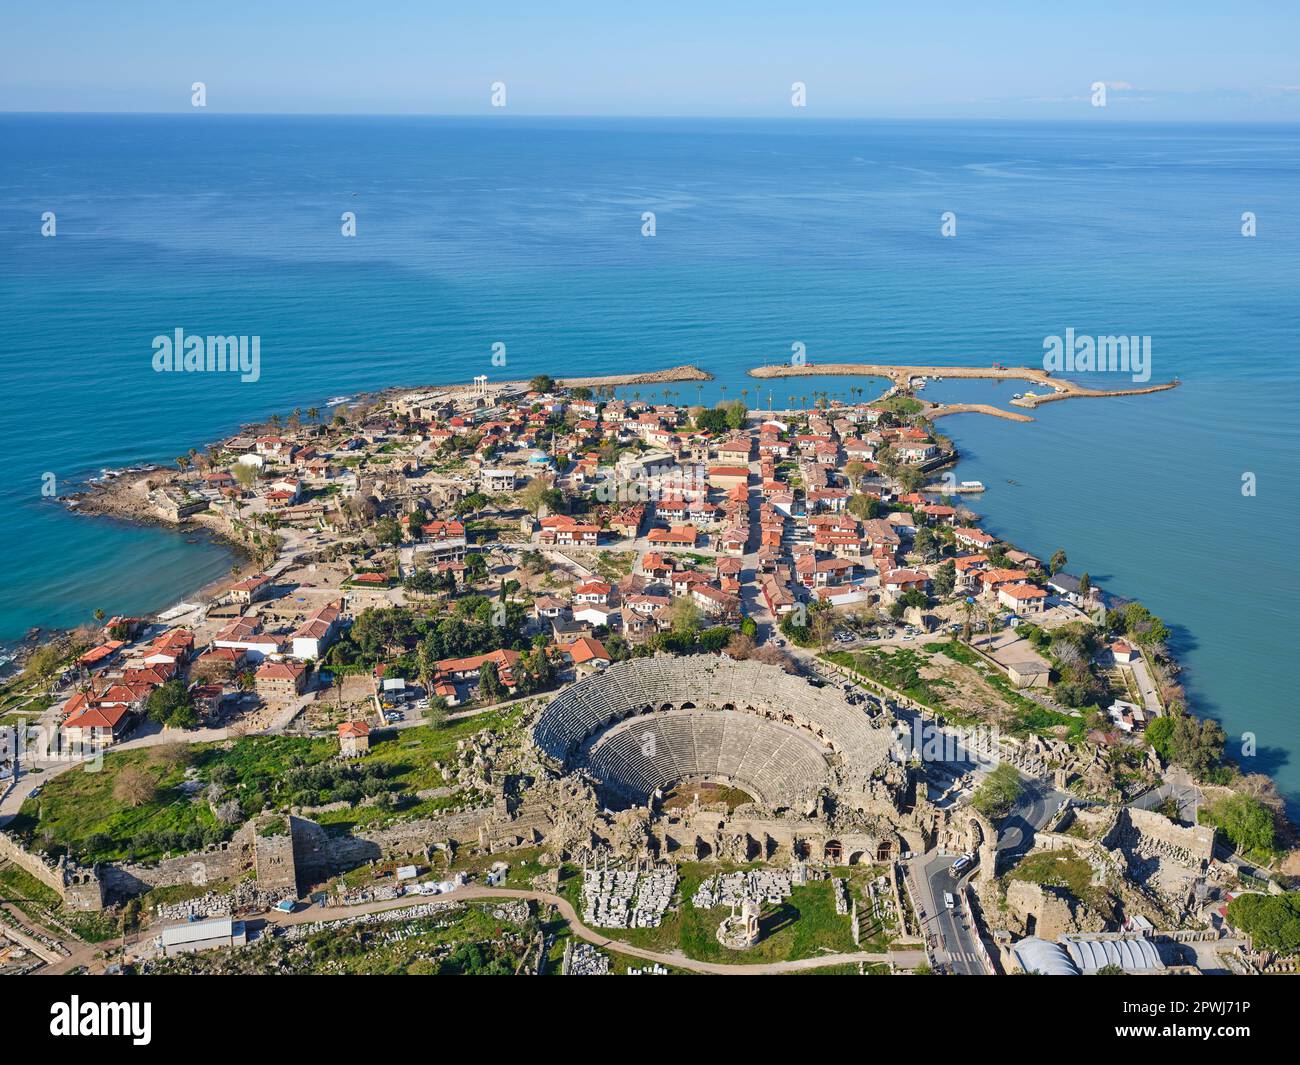 VUE AÉRIENNE. L'ancienne ville de Sidé avec son théâtre. Sidé, province d'Antalya, Anatolie, Turquie. Banque D'Images